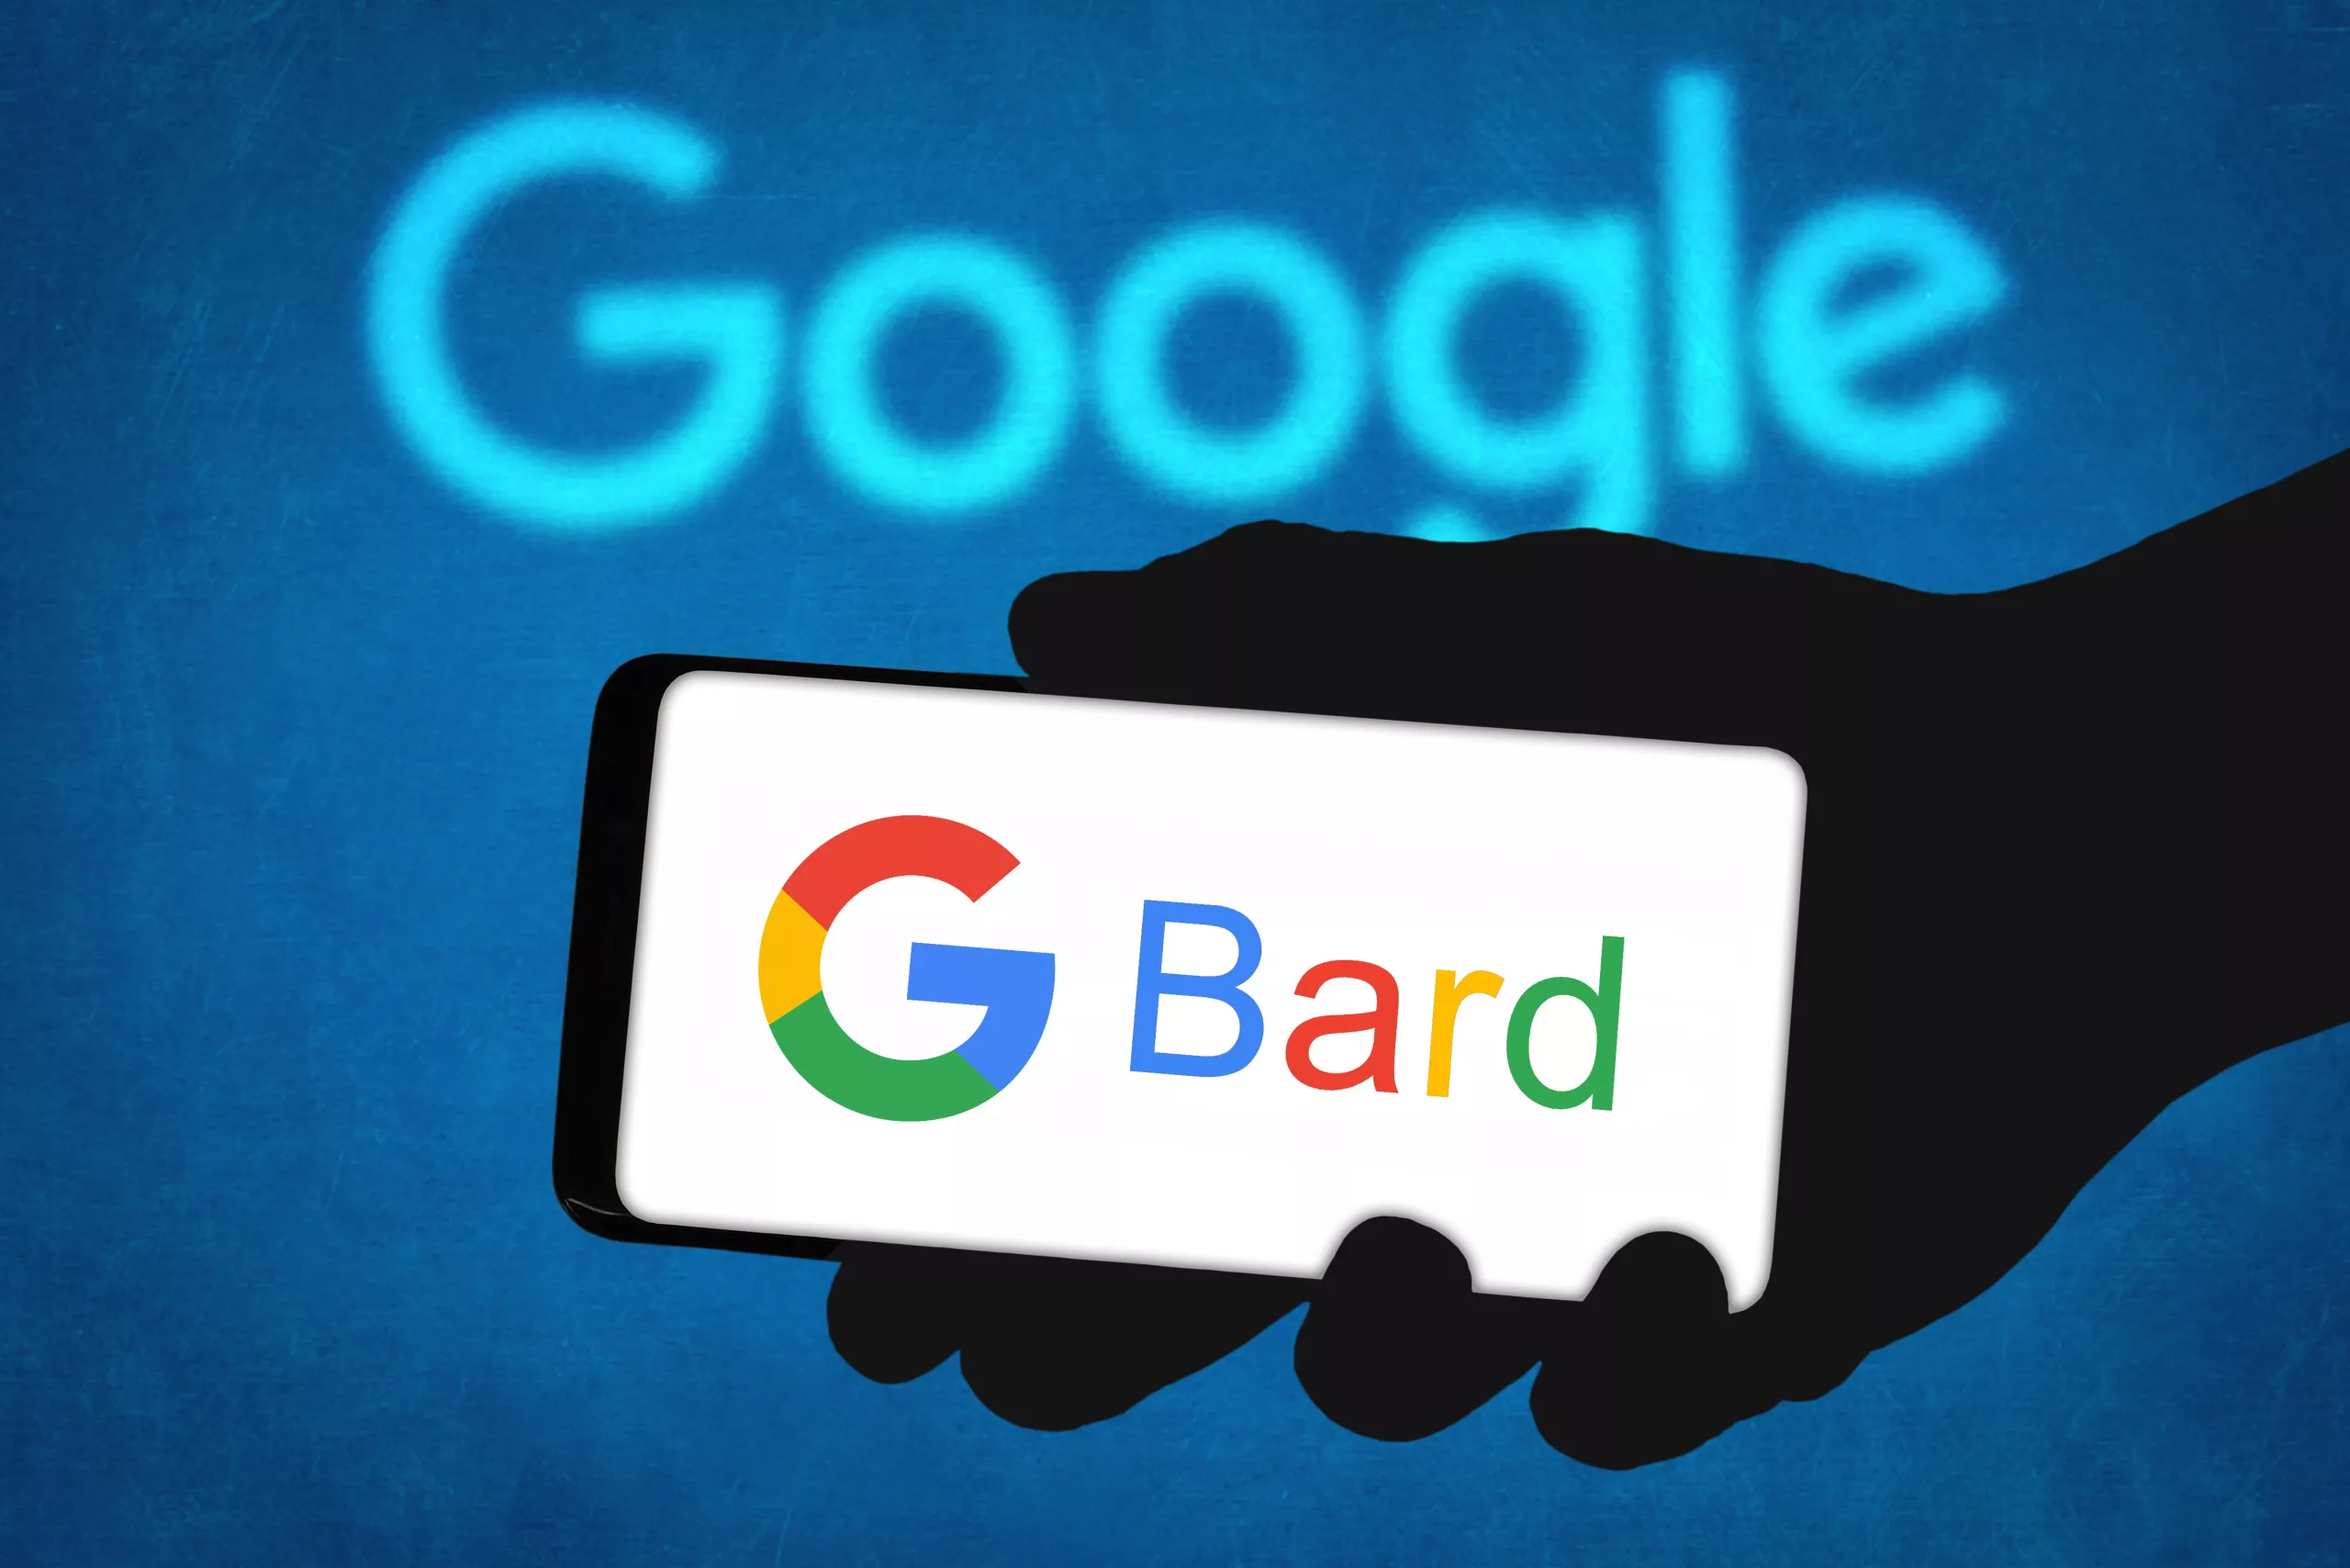 Google Bard - AI chatbot technology